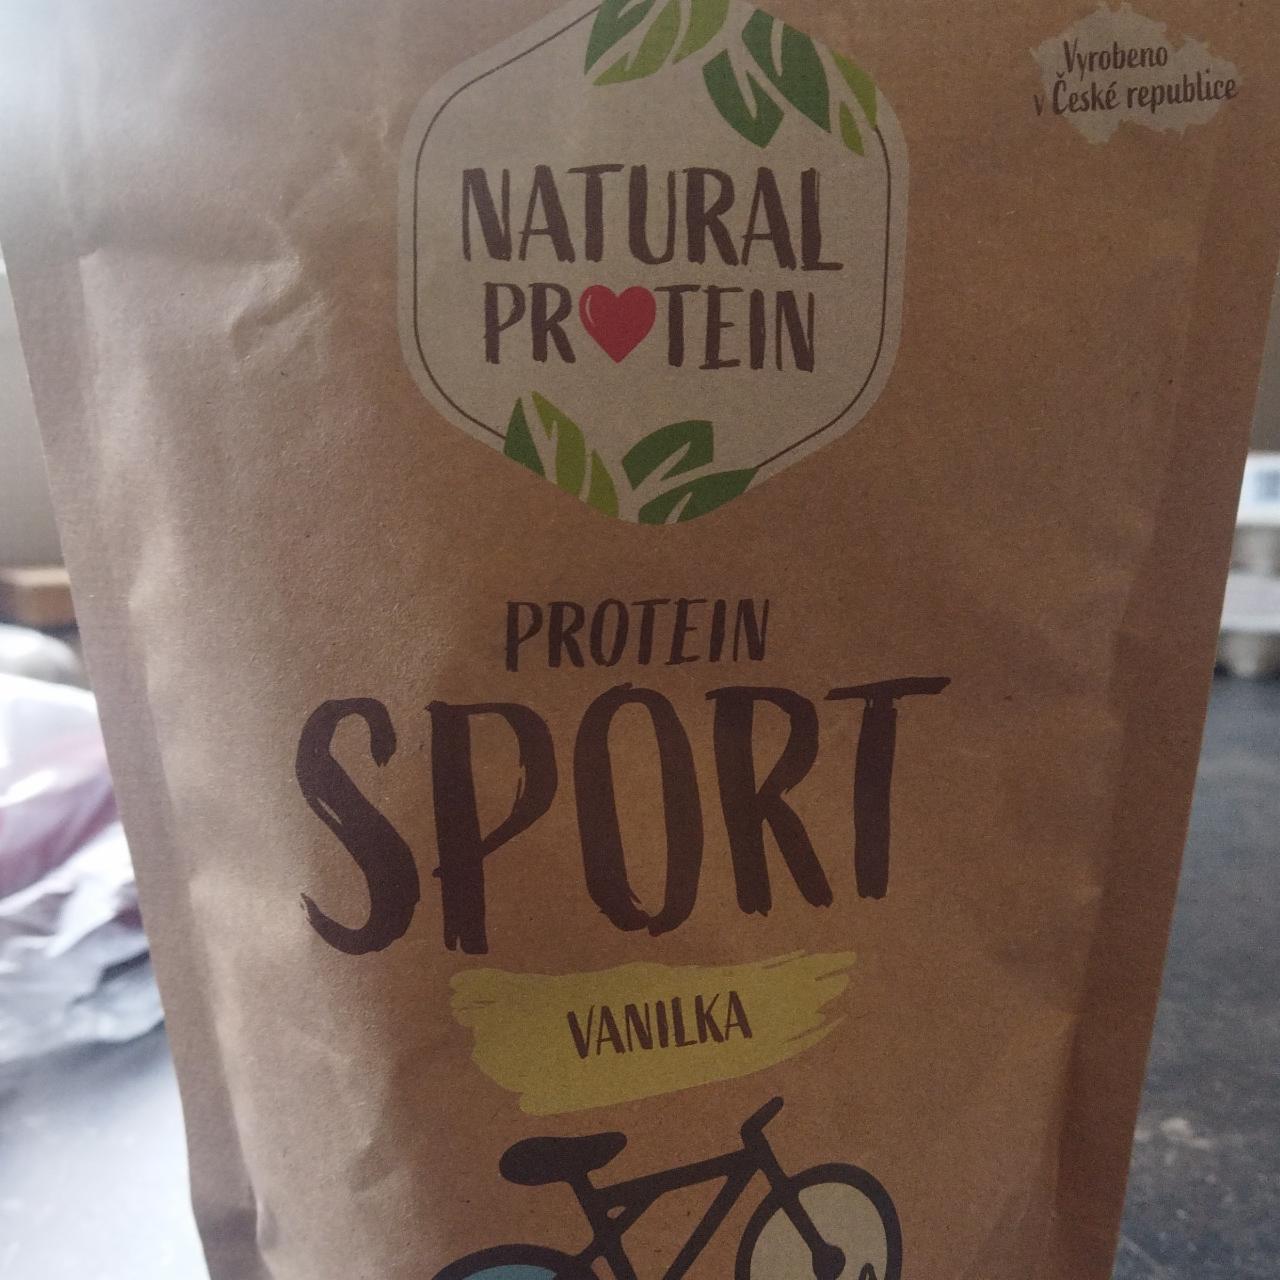 Fotografie - Protein sport vanilka Natural protein